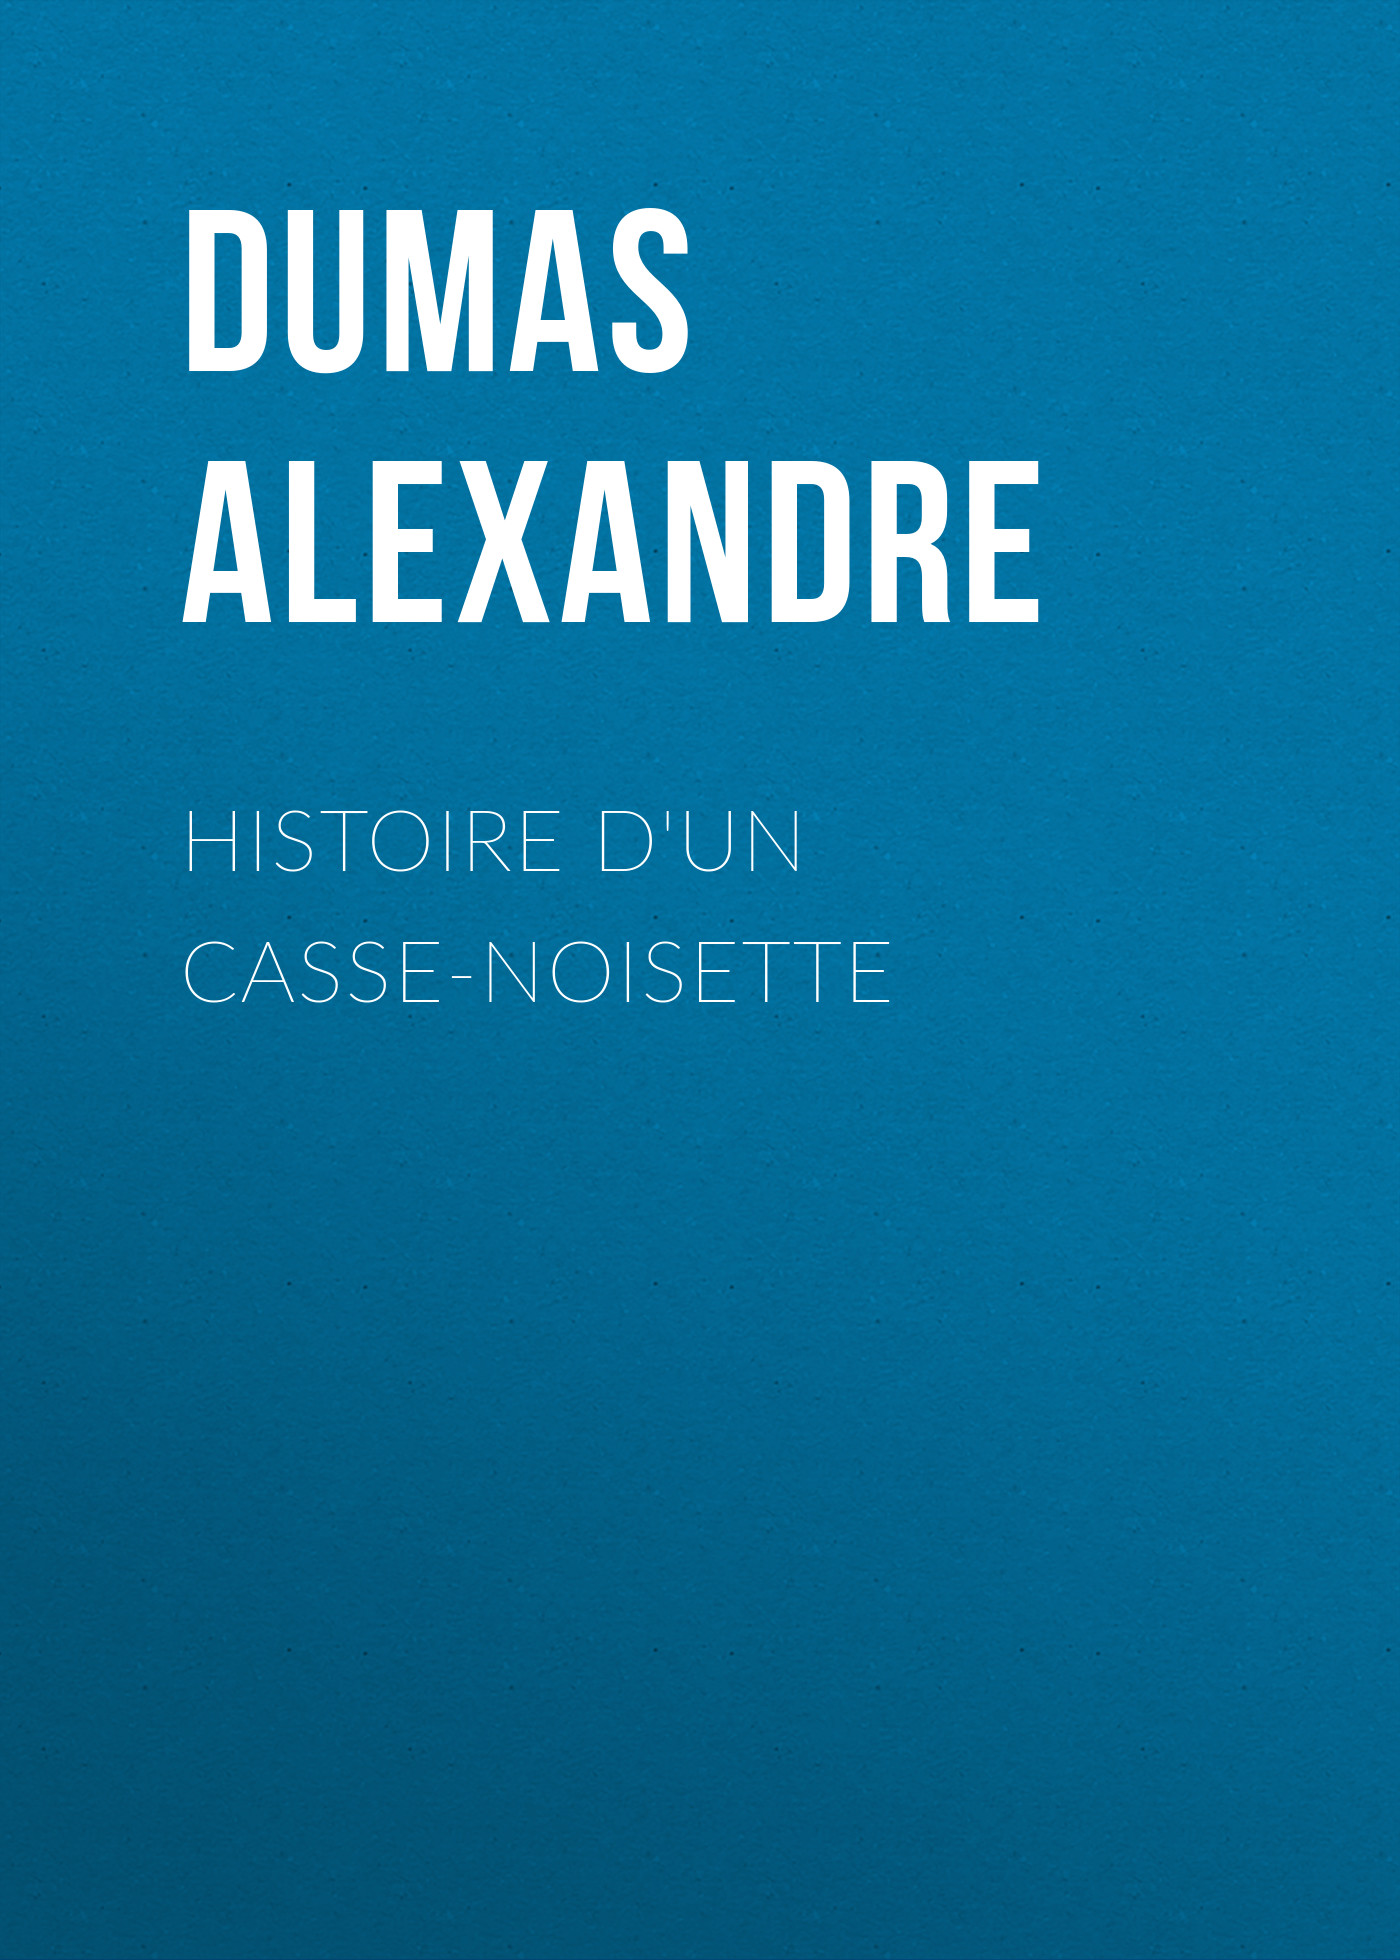 Книга Histoire d'un casse-noisette из серии , созданная Alexandre Dumas, может относится к жанру Литература 19 века, Зарубежная старинная литература, Зарубежная классика. Стоимость электронной книги Histoire d'un casse-noisette с идентификатором 25201711 составляет 0 руб.